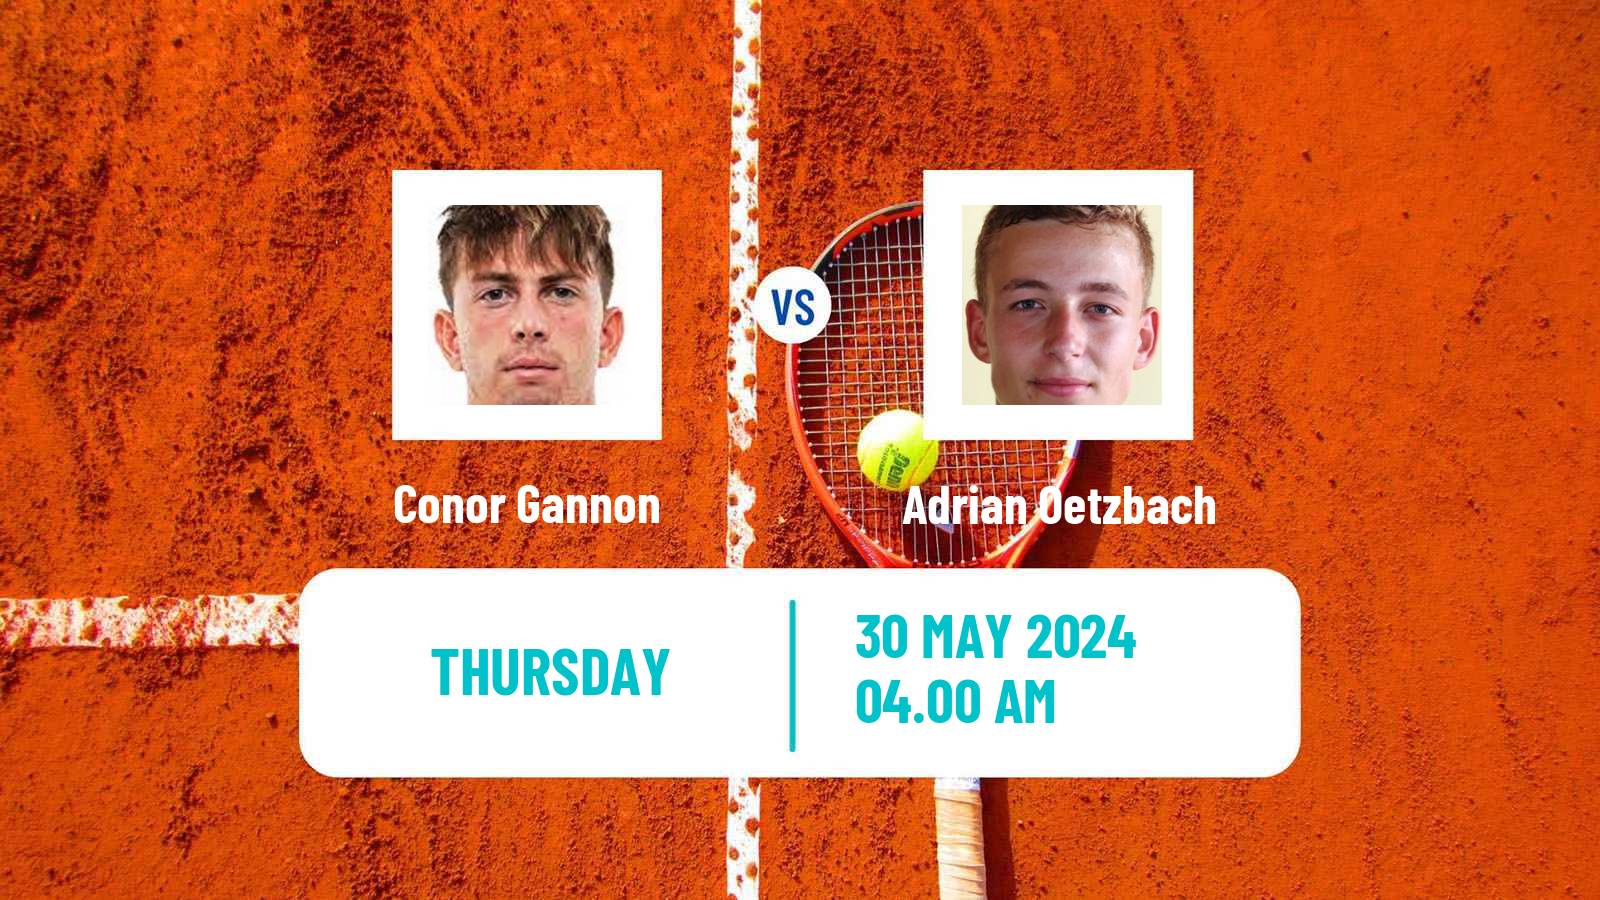 Tennis ITF M15 Bol 2 Men Conor Gannon - Adrian Oetzbach